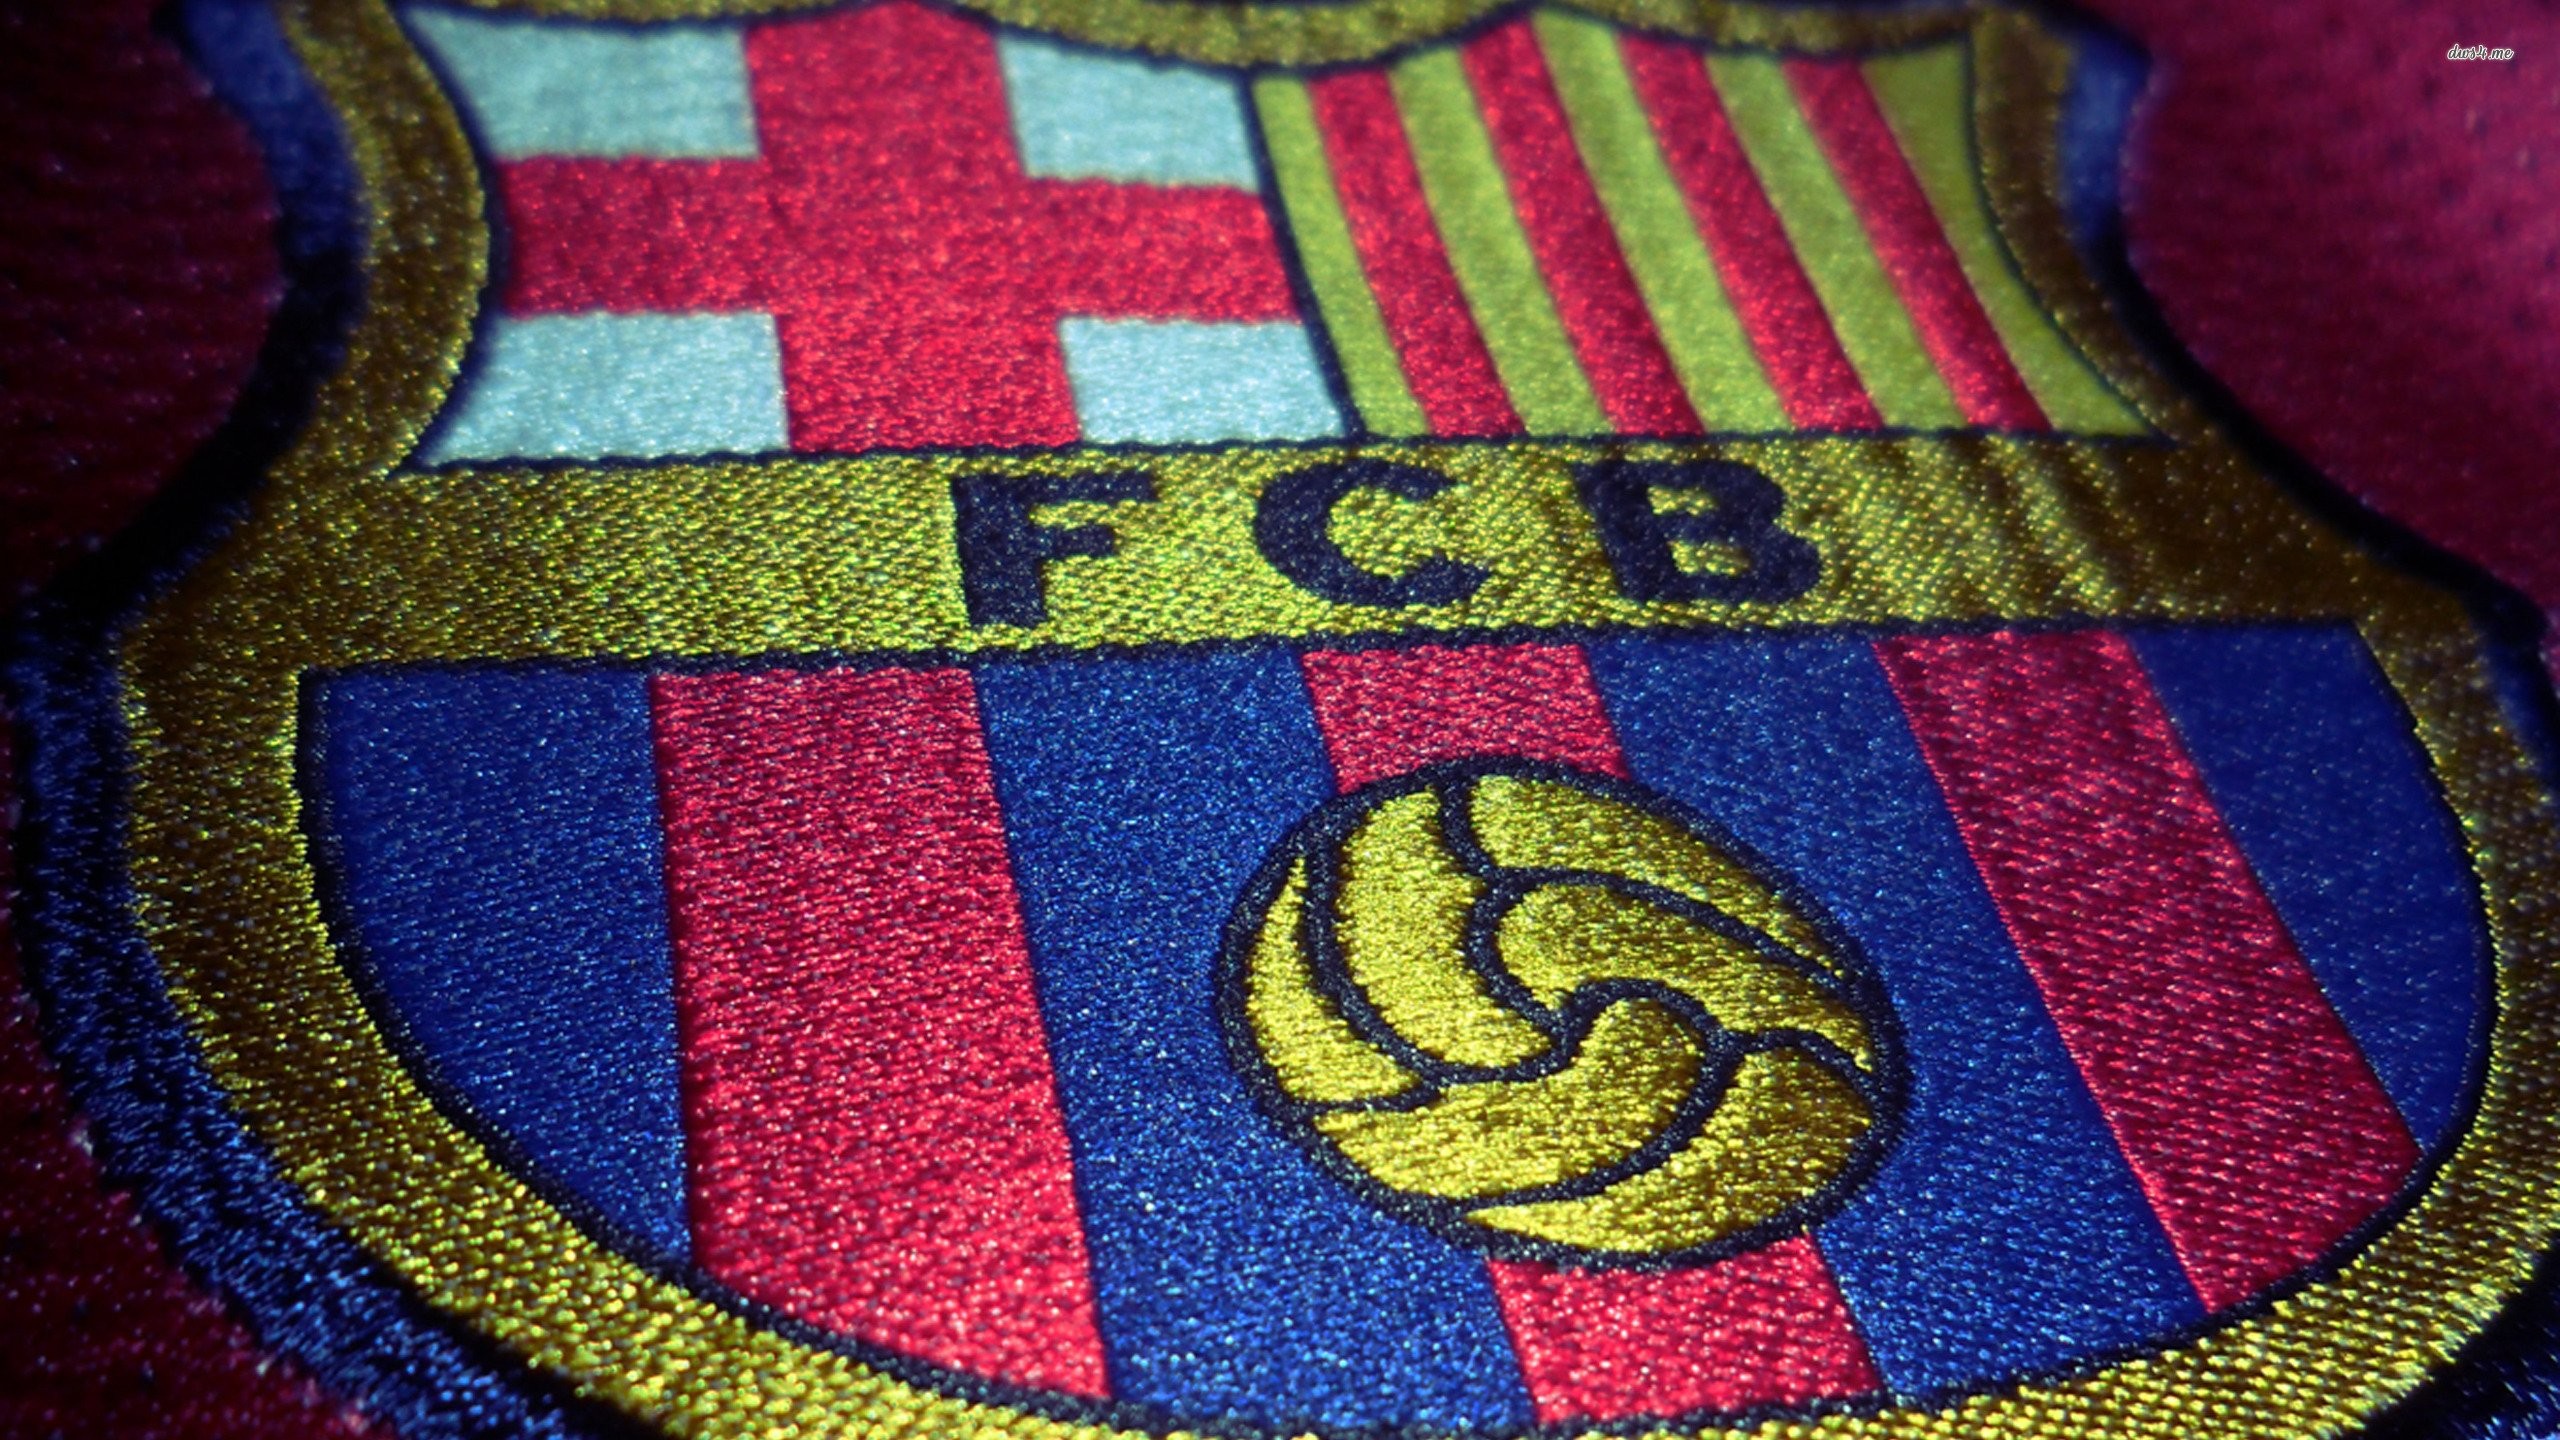 Full FHDQ, FC Barcelona, Arron Gidney